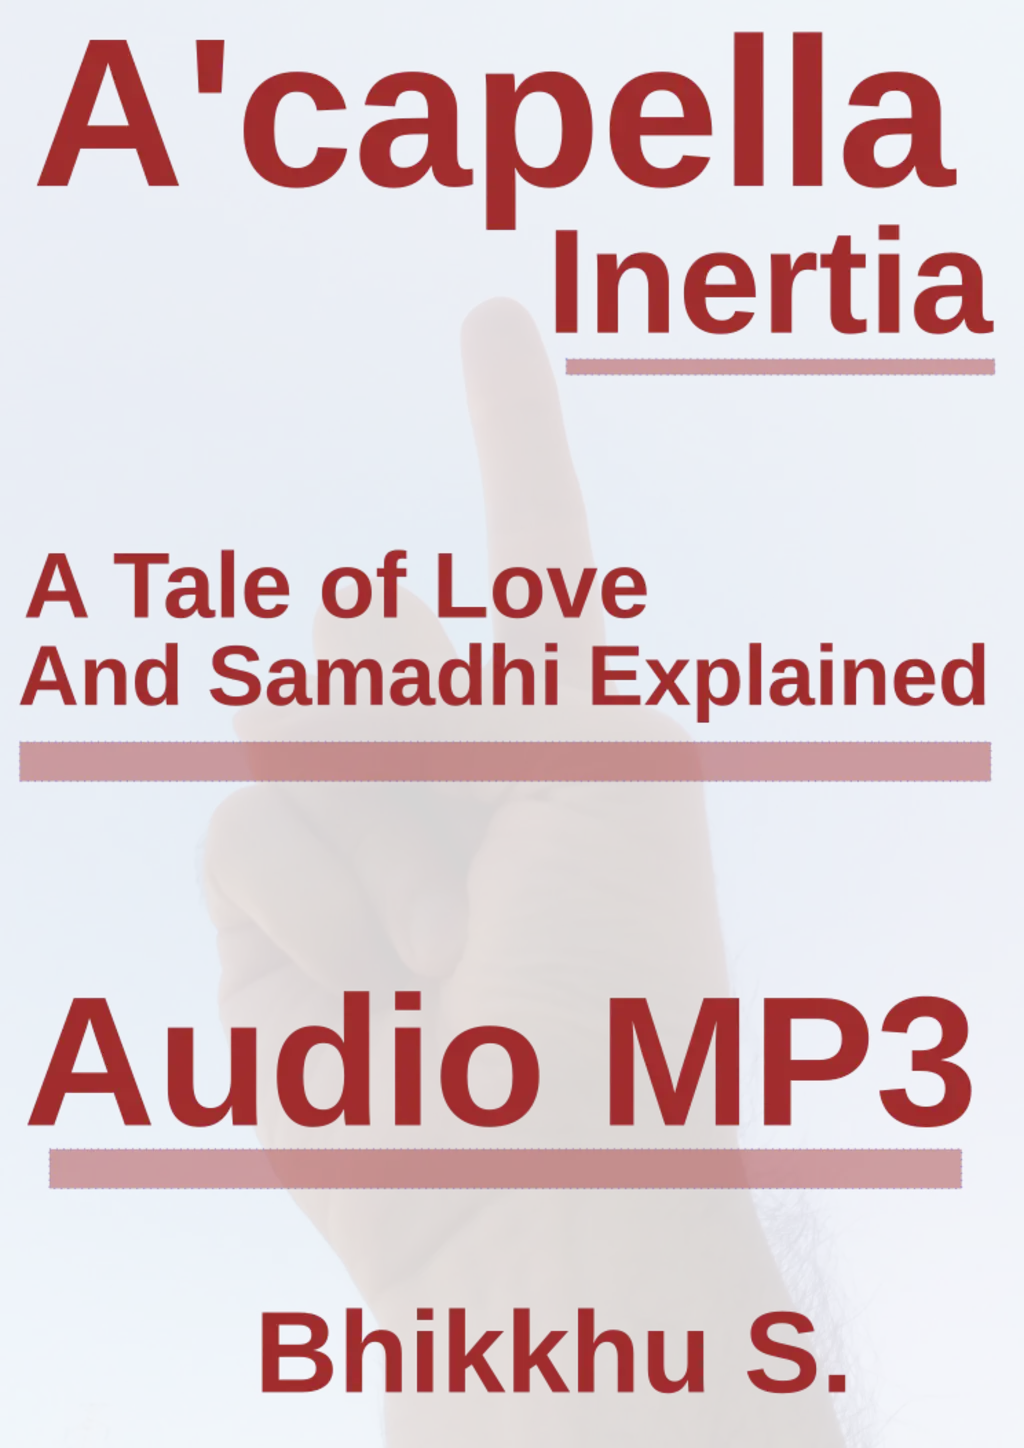 image from Acapella Inertia MP3 Audio